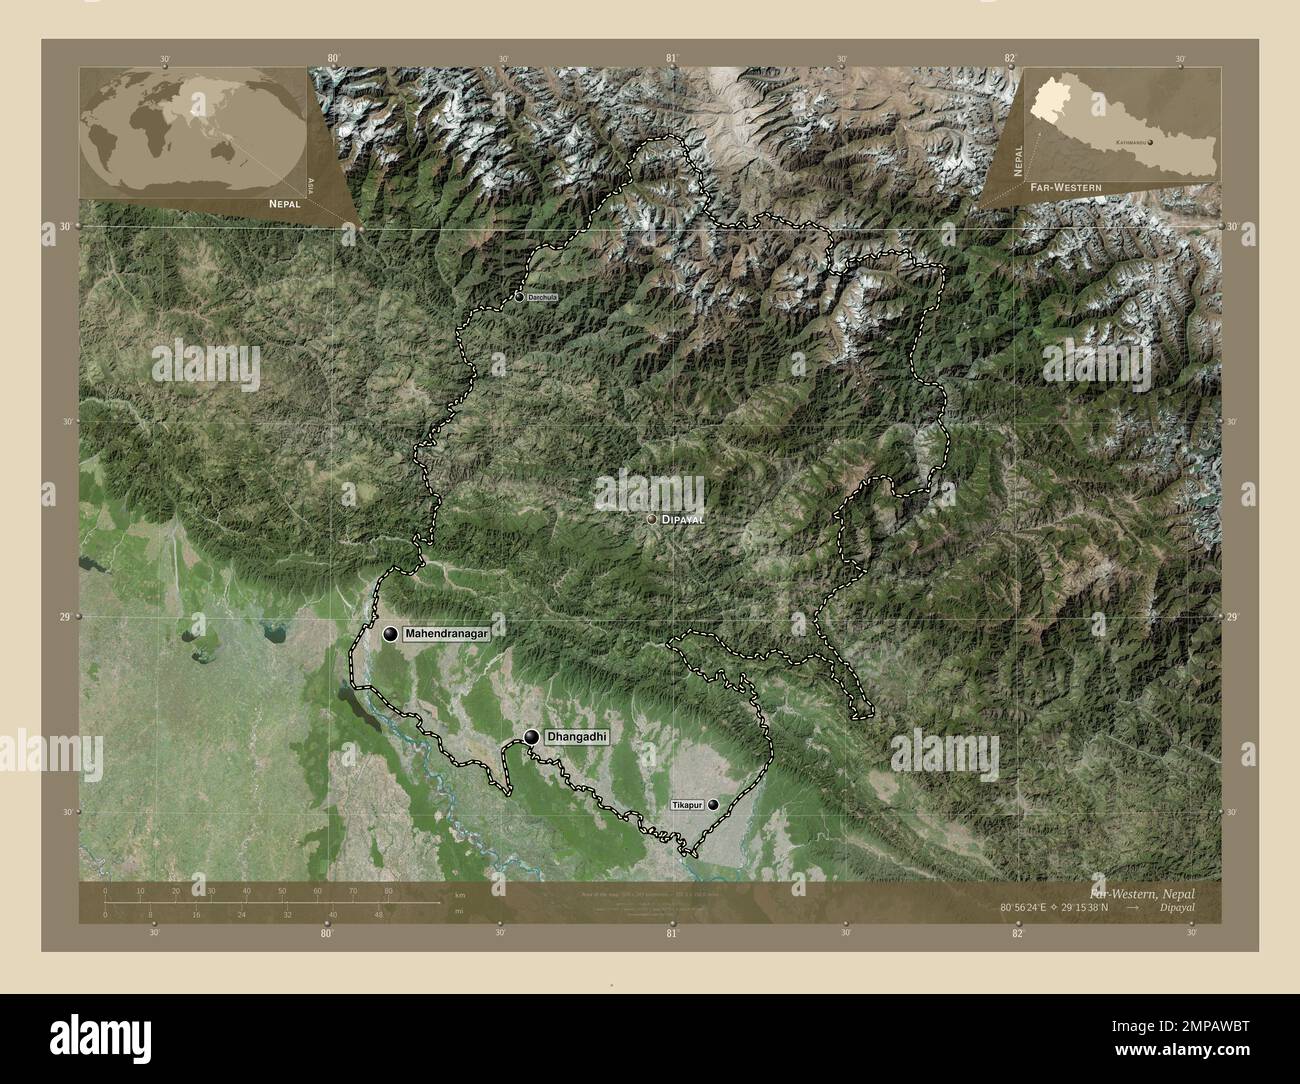 Estremo-Occidentale, regione di sviluppo del Nepal. Mappa satellitare ad alta risoluzione. Località e nomi delle principali città della regione. Posizione ausiliaria ad angolo Foto Stock